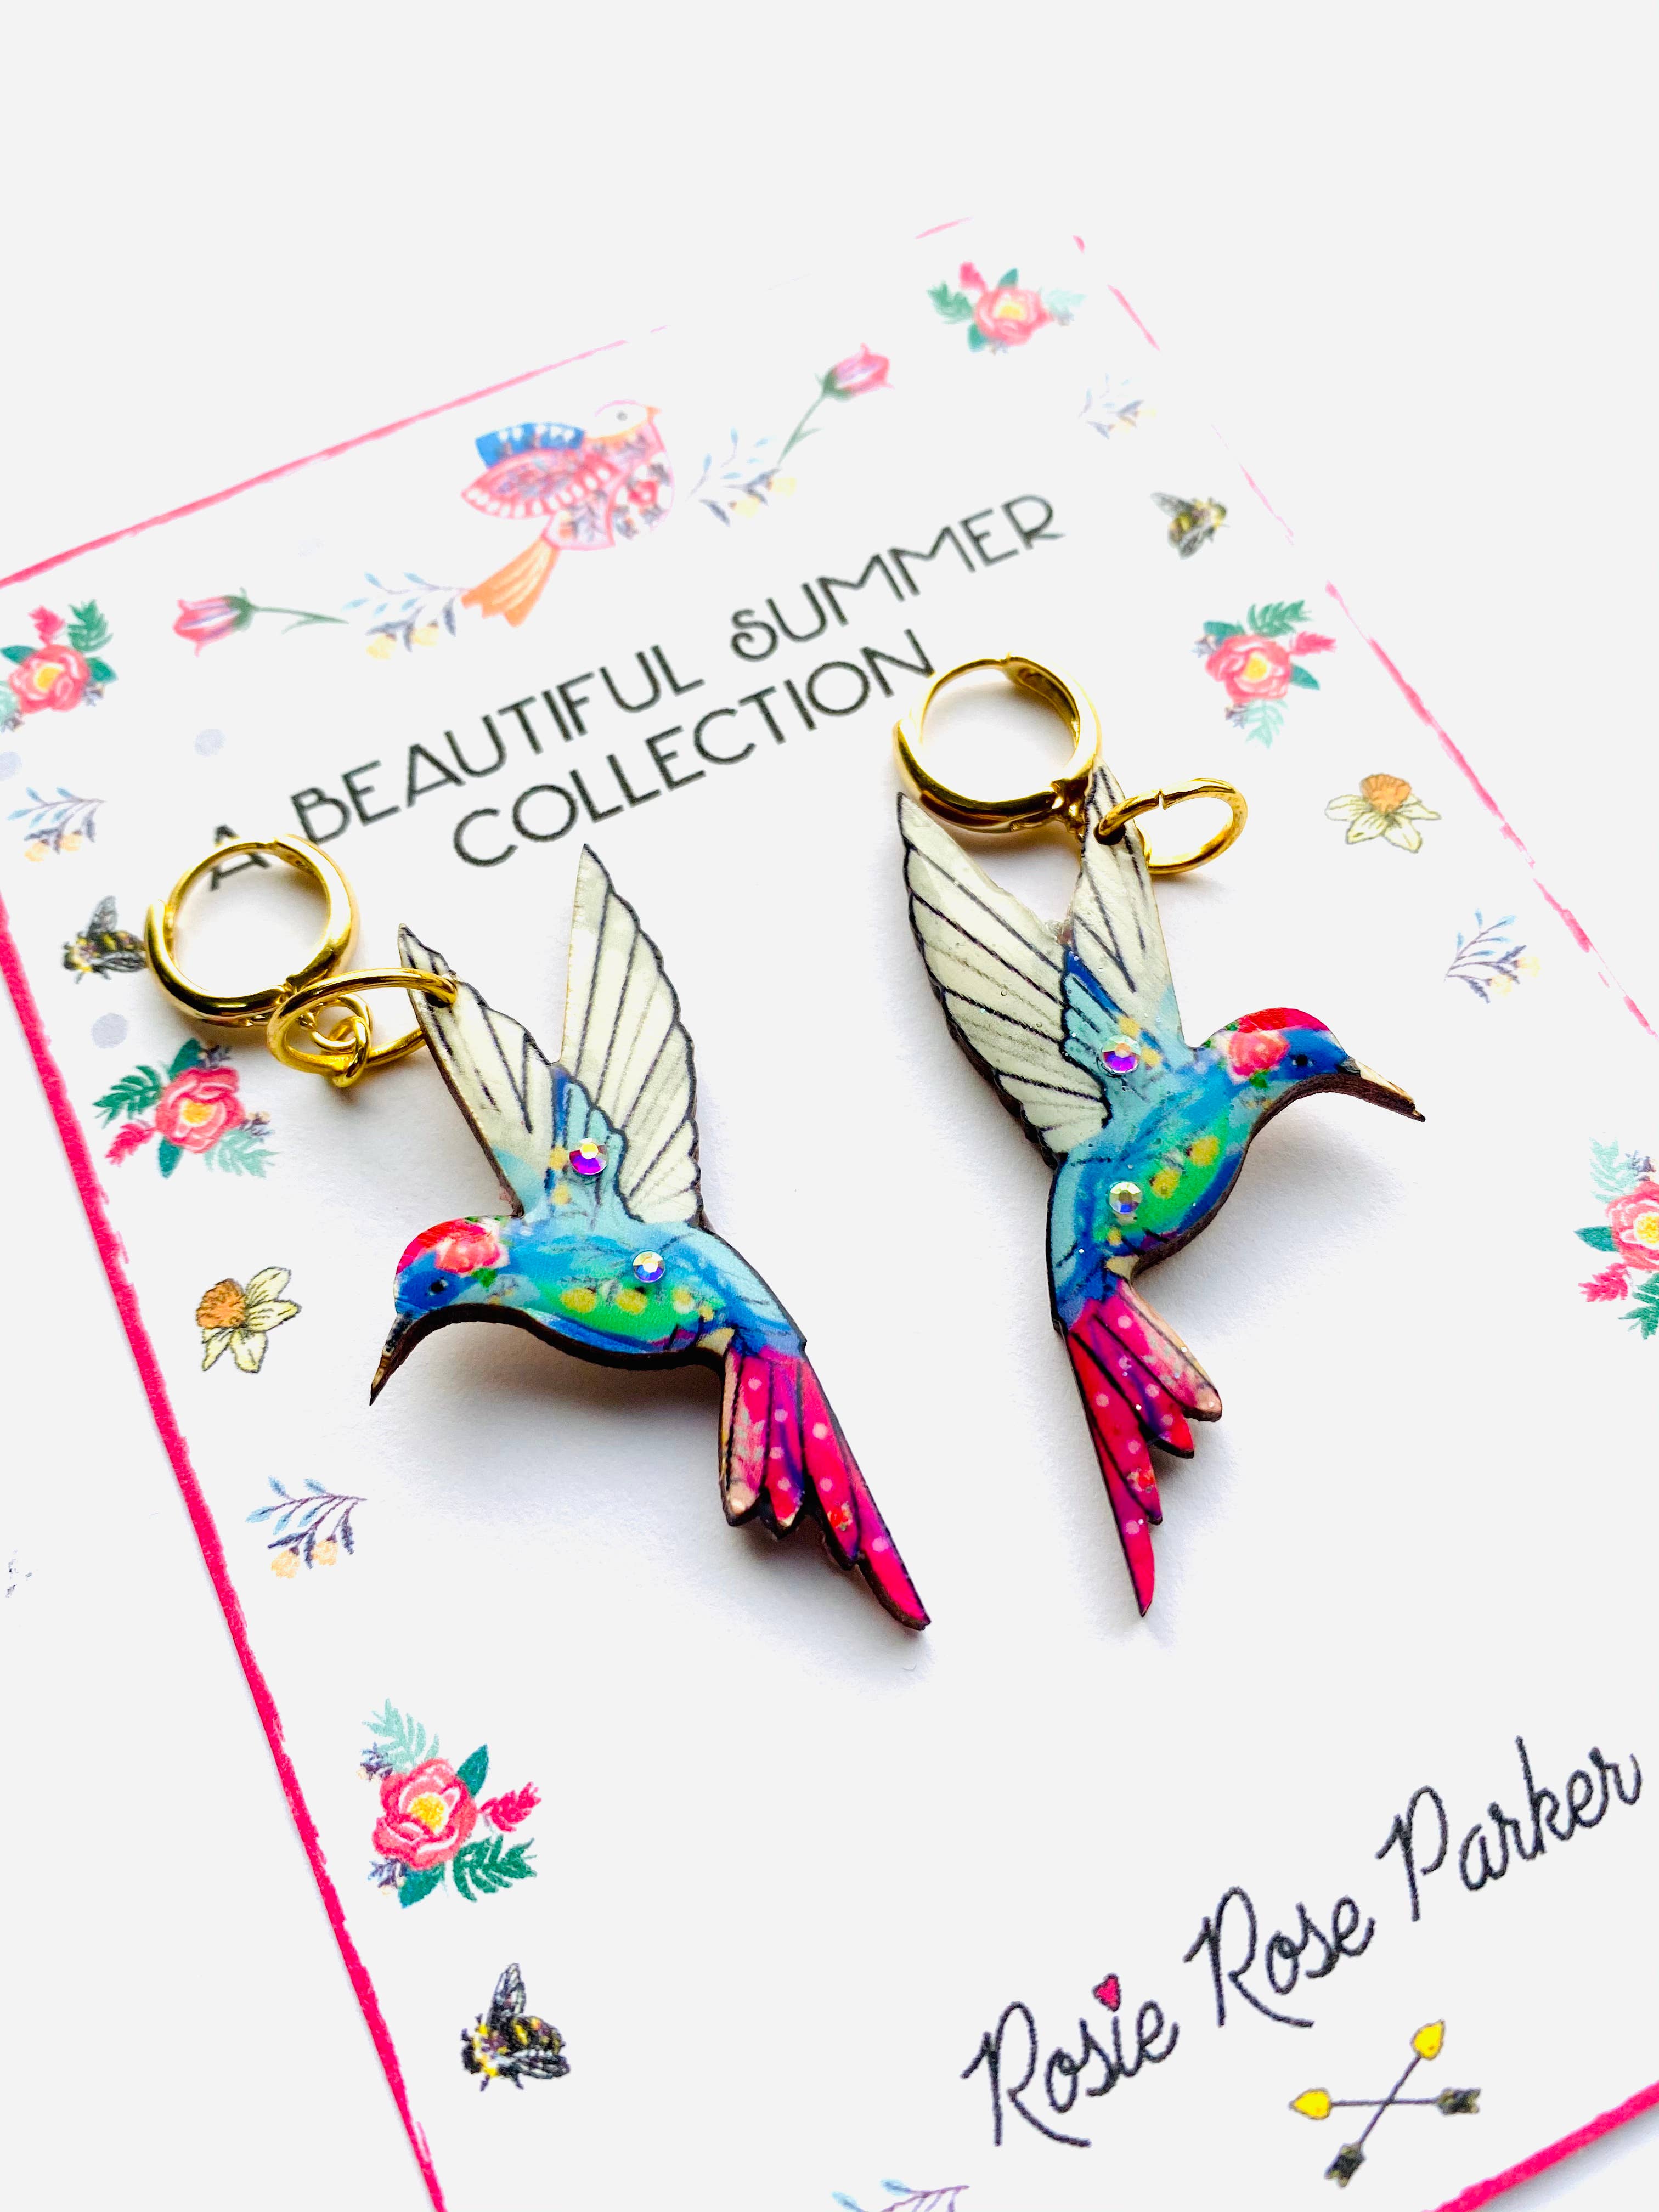 Colourful hummingbird dangle huggie hoop earrings by Rosie Rose Parker